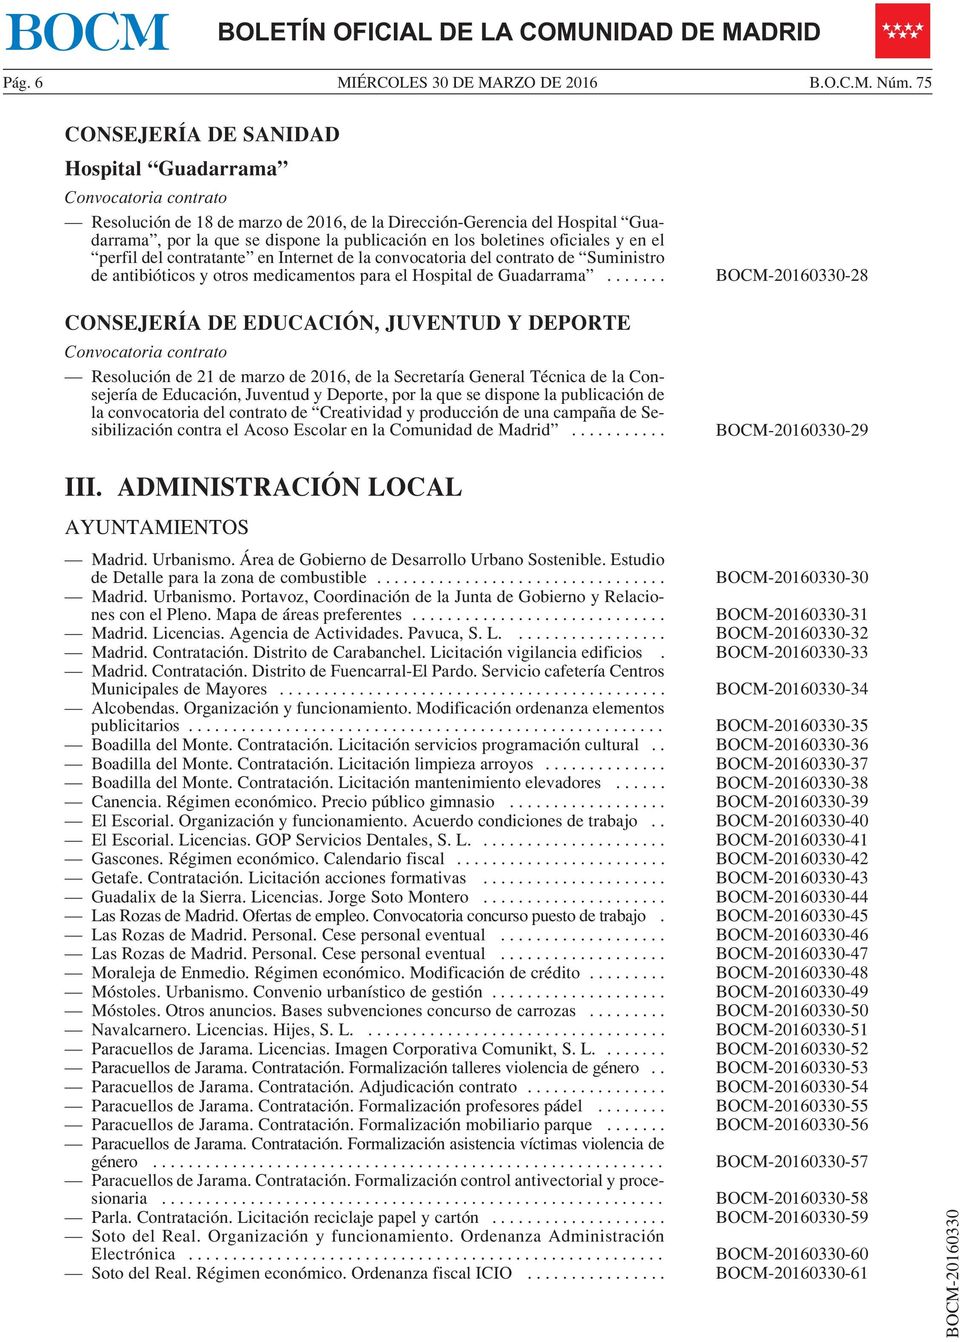 contratante en Internet de la convocatoria del contrato de Suministro de antibióticos y otros medicamentos para el Hospital de Guadarrama.